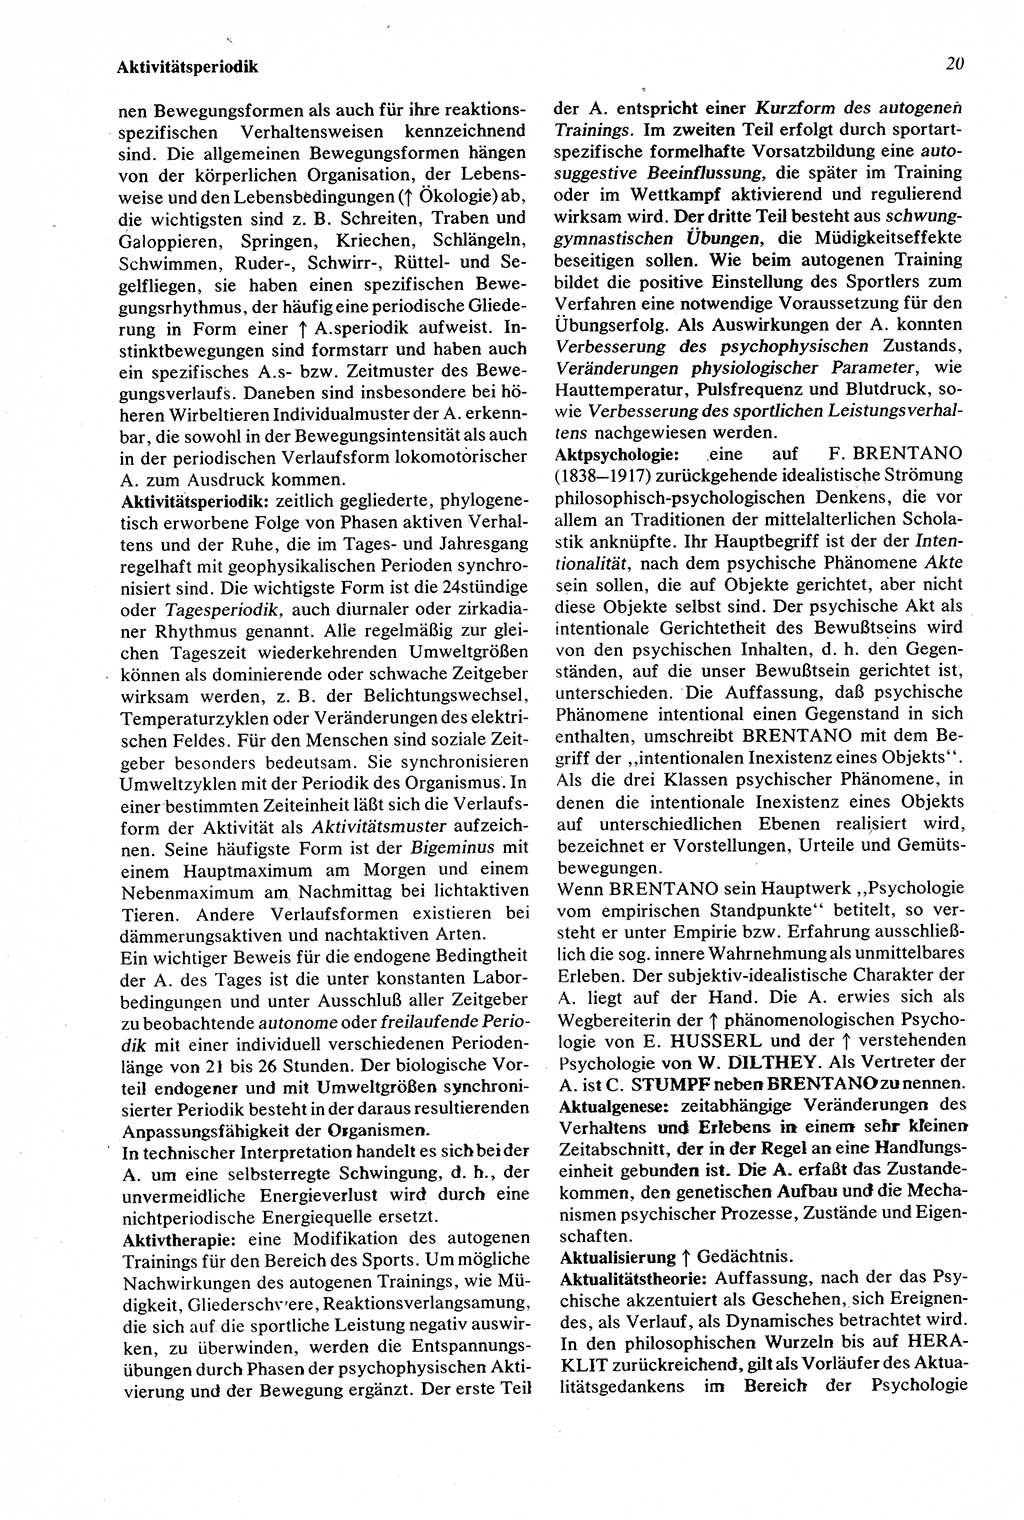 Wörterbuch der Psychologie [Deutsche Demokratische Republik (DDR)] 1976, Seite 20 (Wb. Psych. DDR 1976, S. 20)